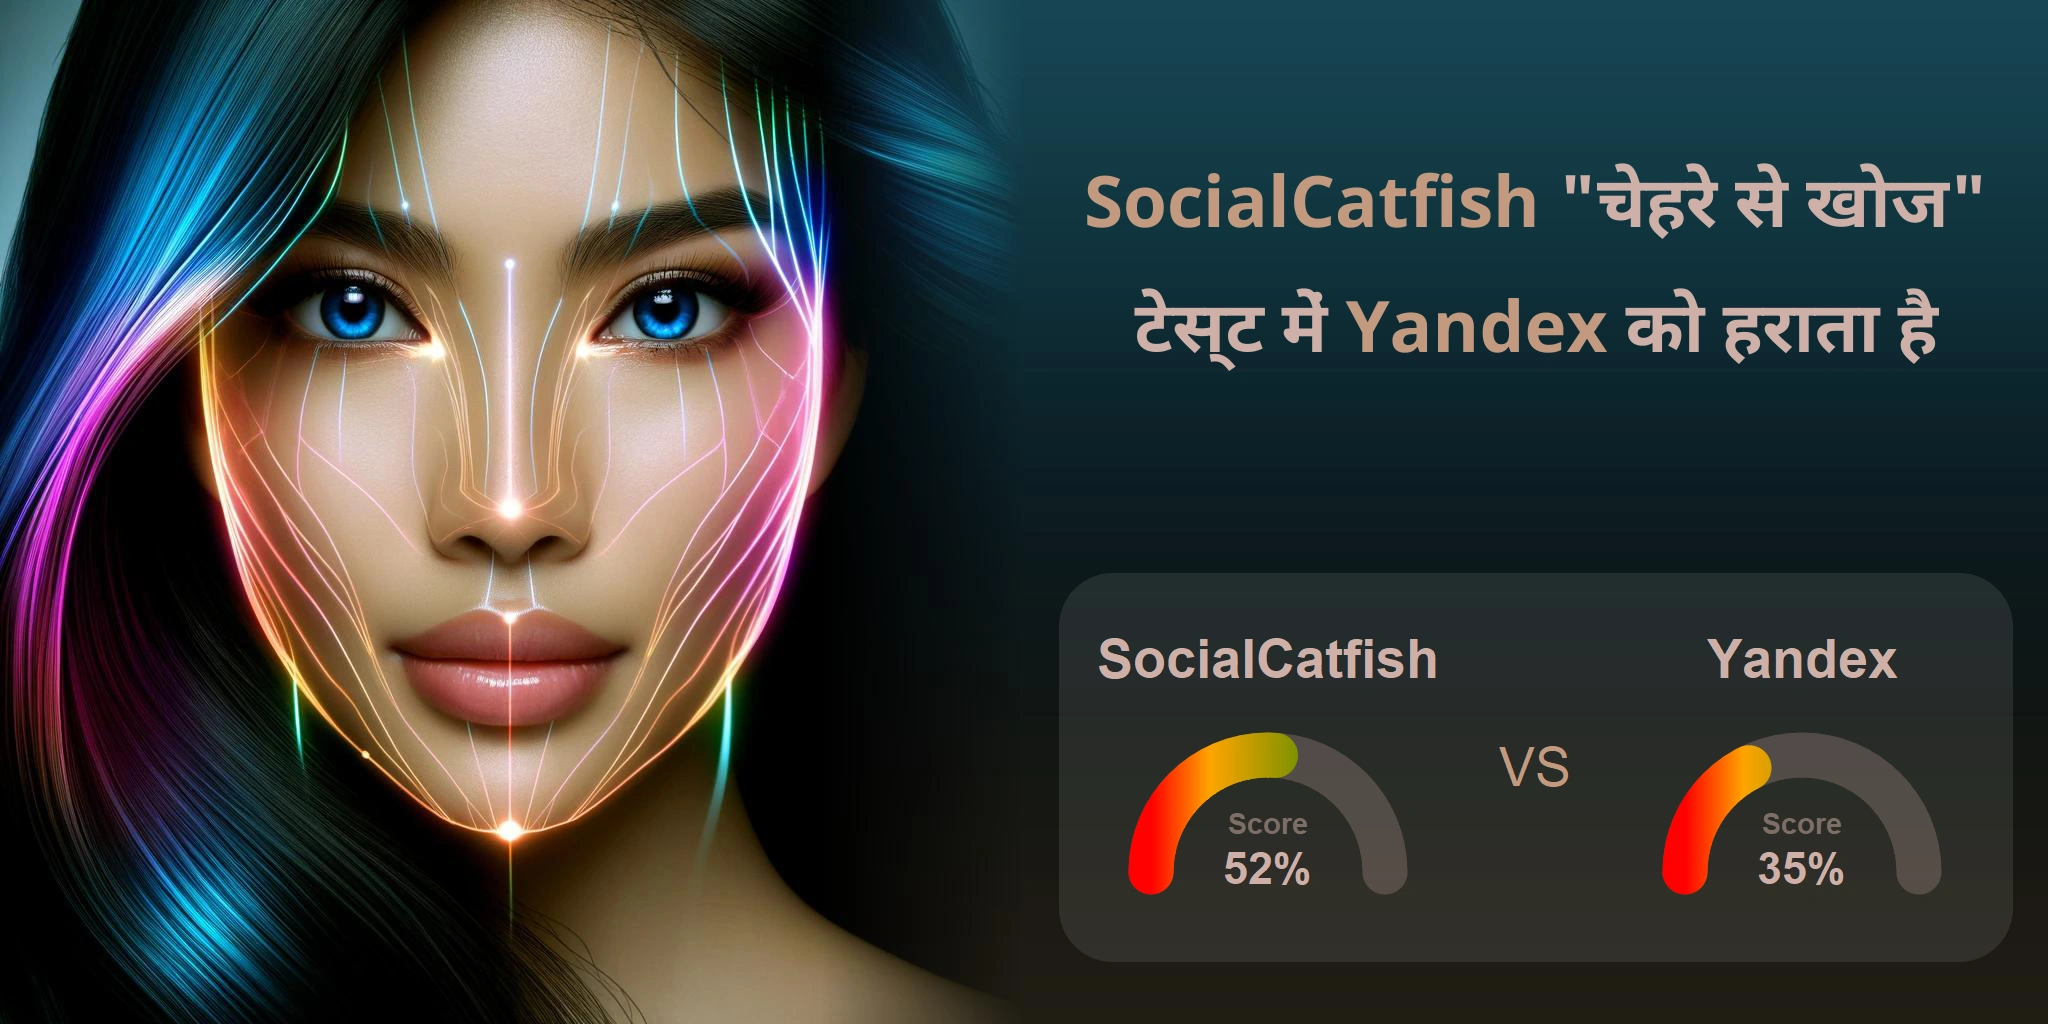 चेहरे की खोज के लिए कौन बेहतर है: <br>SocialCatfish या Yandex?